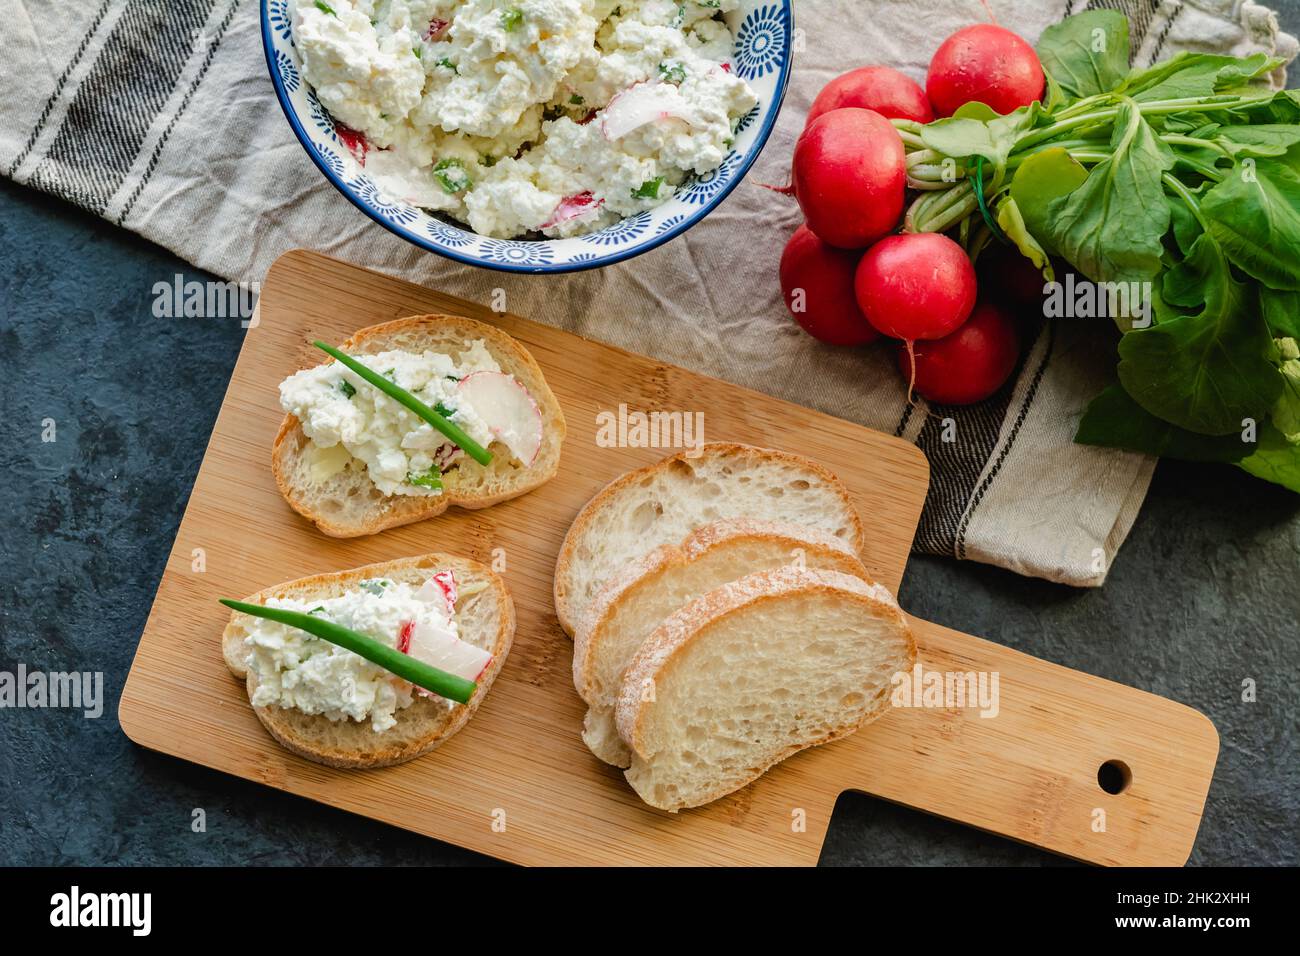 Sandwichs au fromage cottage pour un petit déjeuner sain Banque D'Images